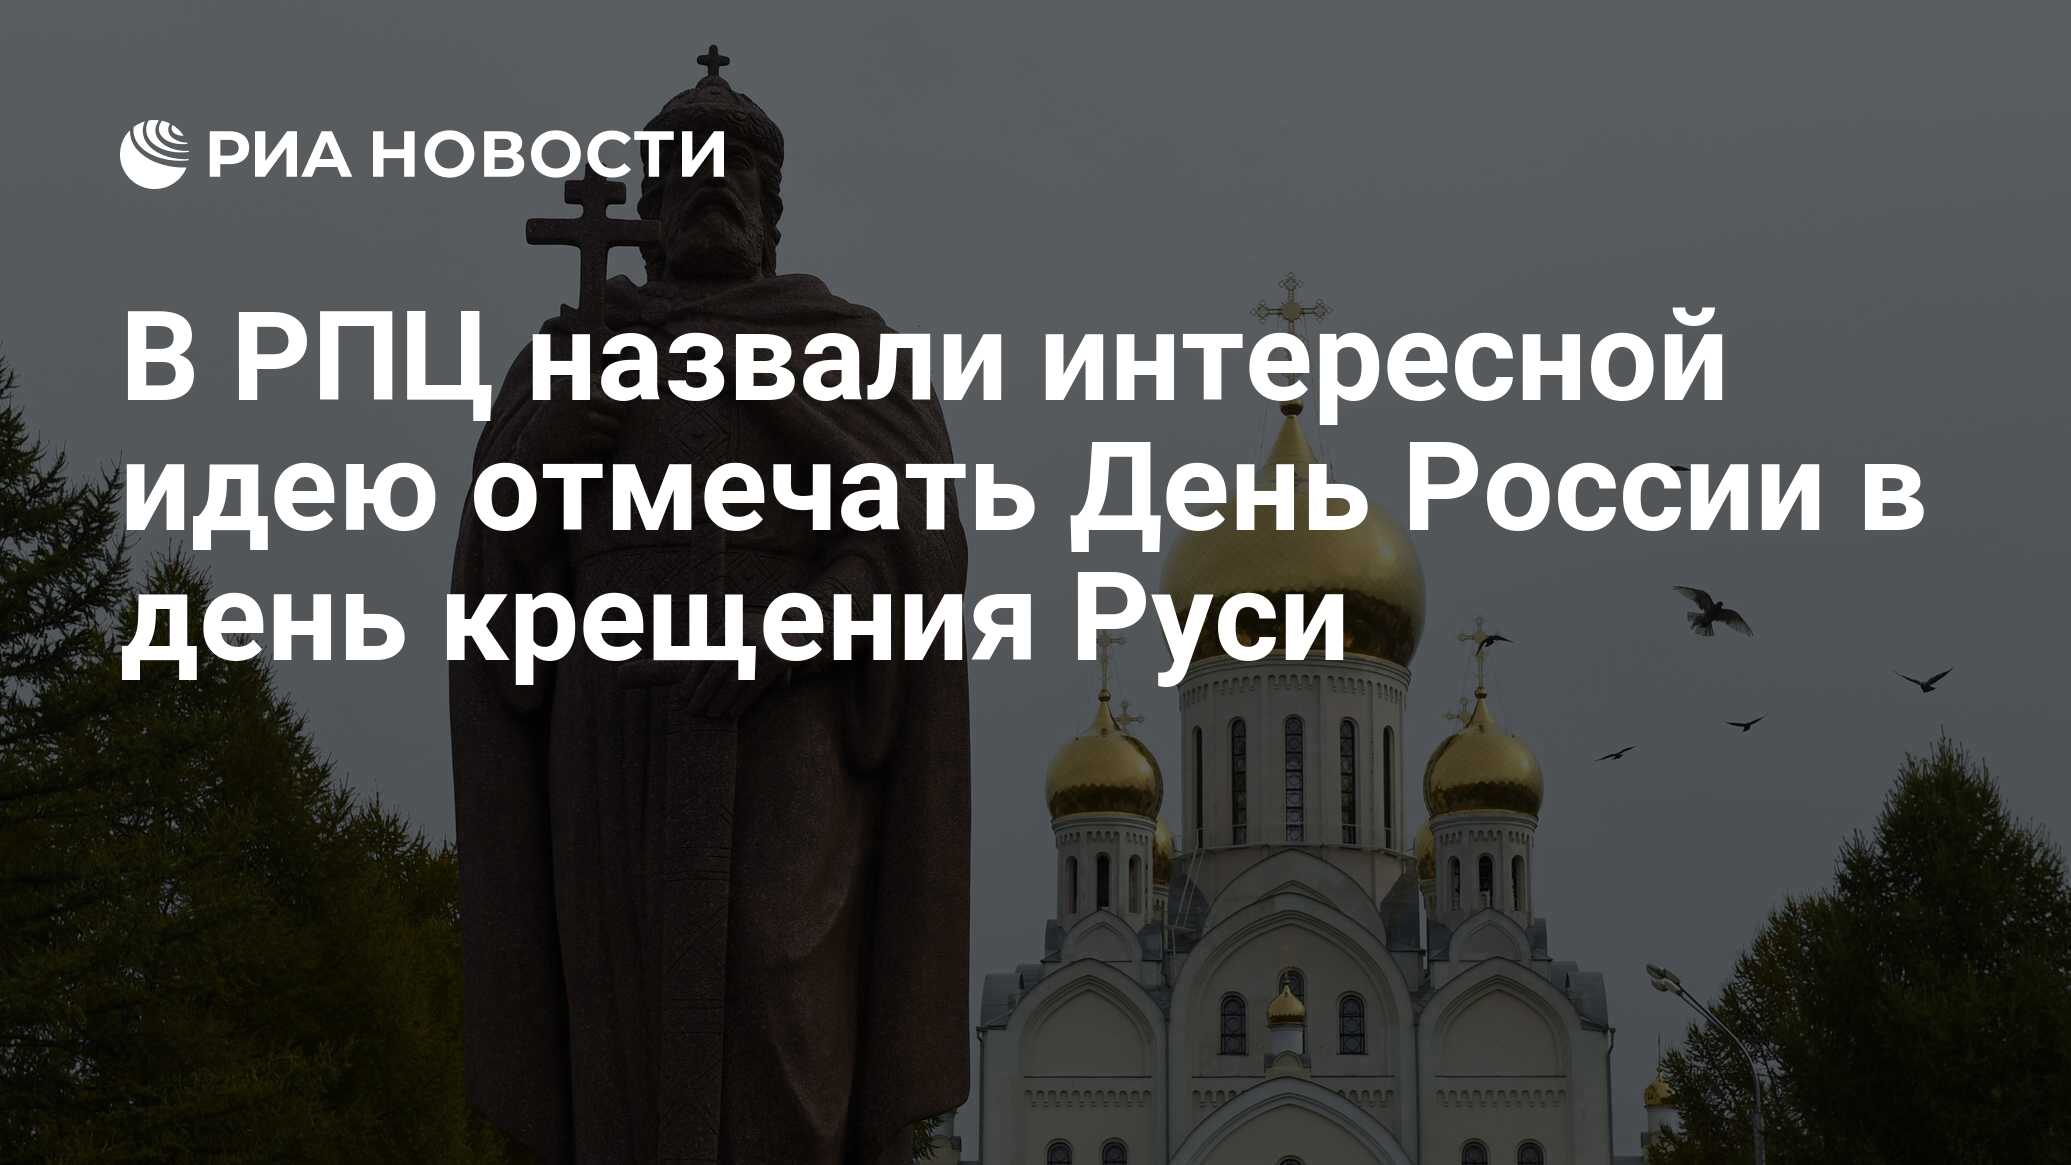 День крещения Руси русская православная Церковь отмечает 28 июля.